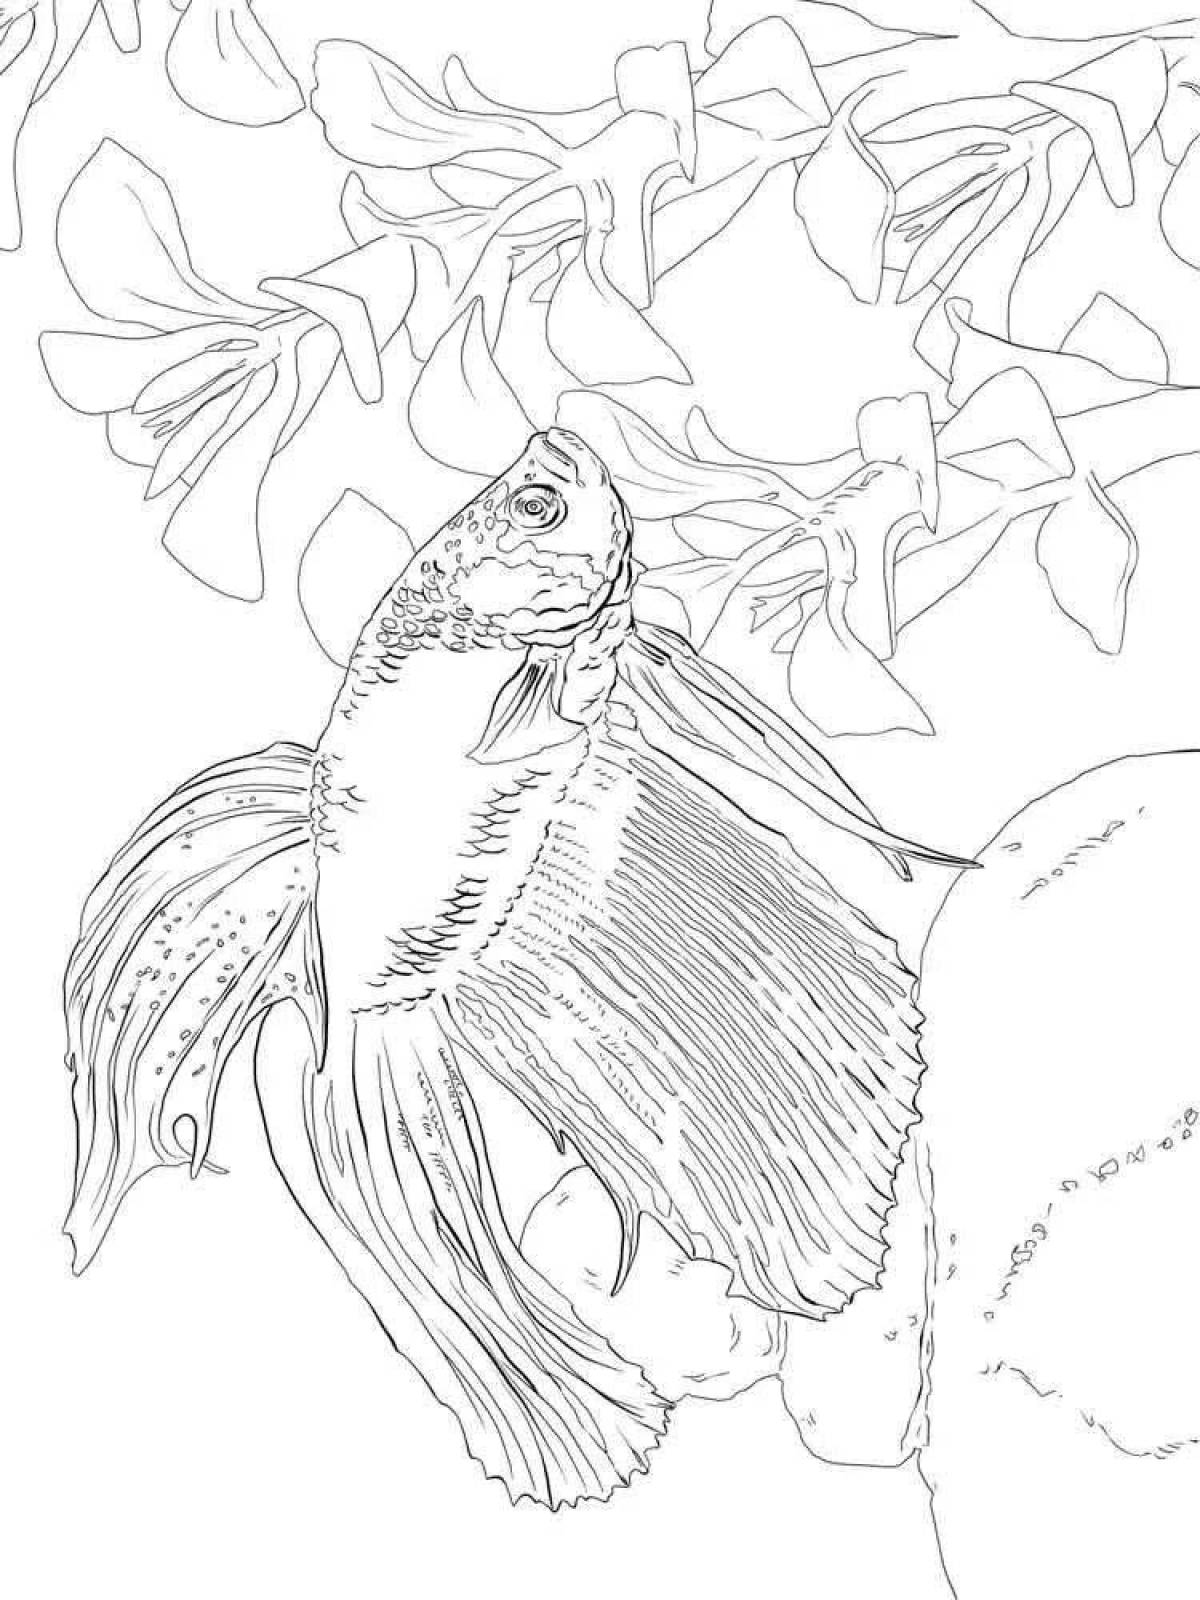 Аквариумная рыбка петушок раскраска